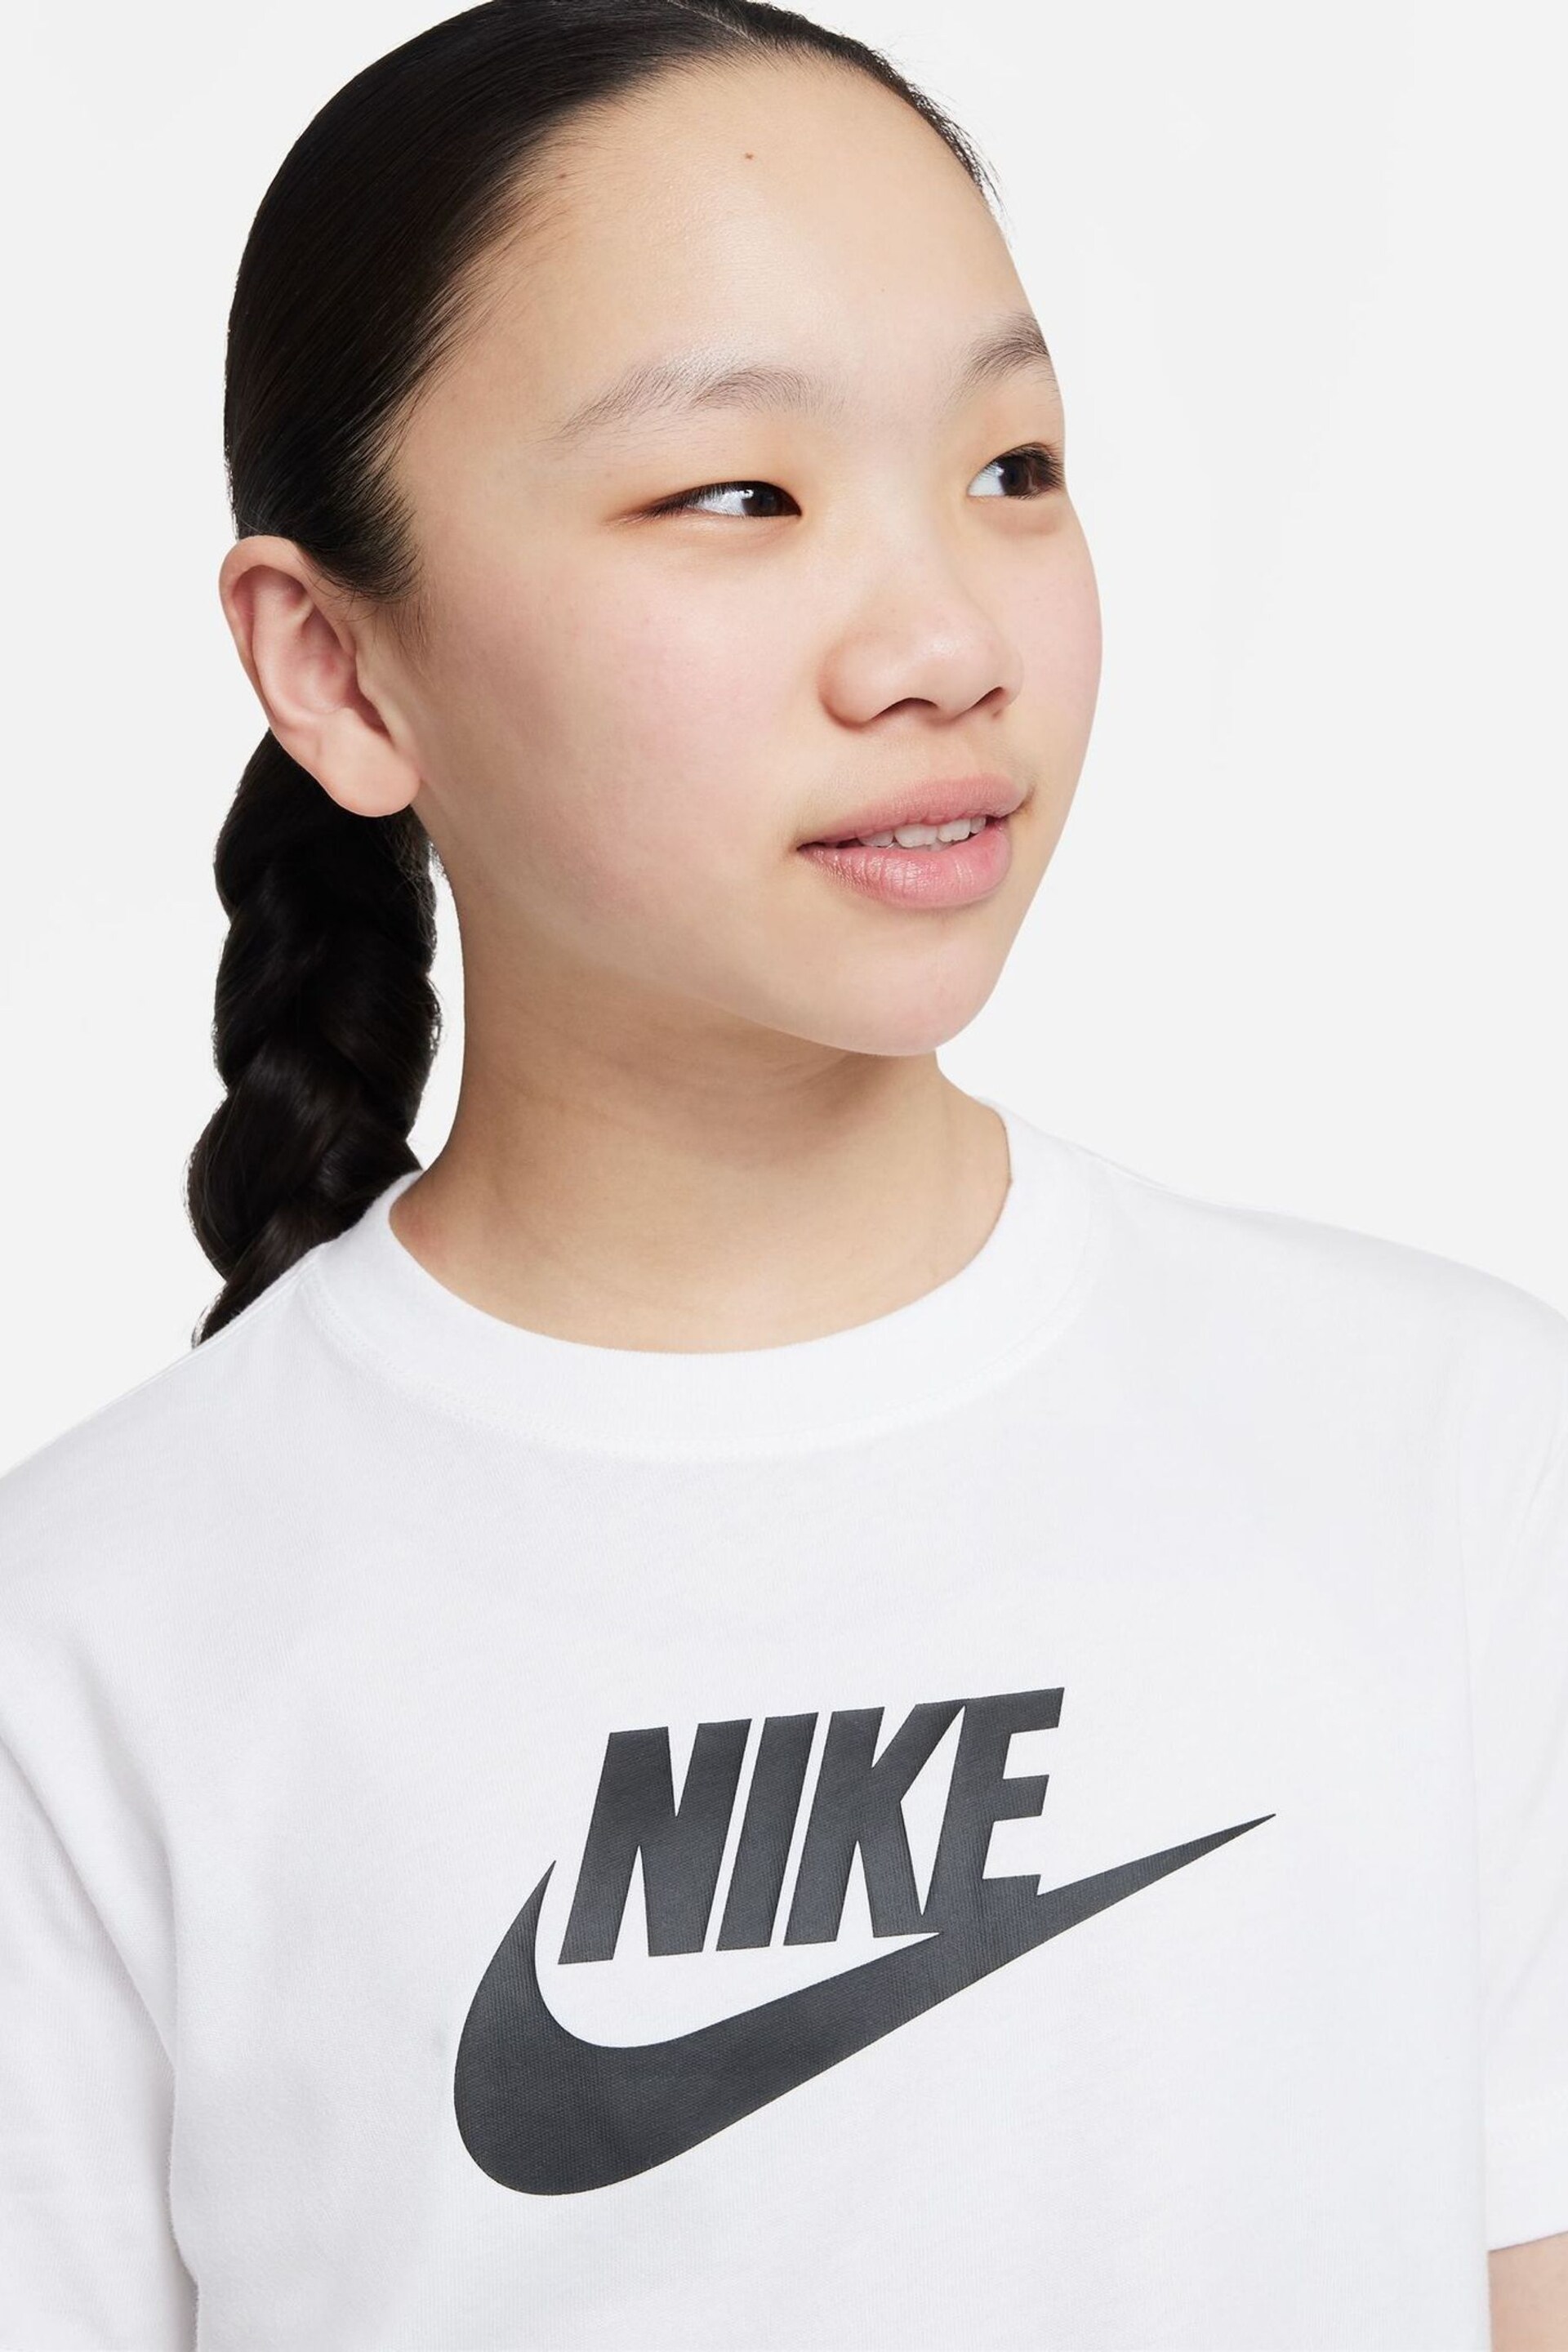 Nike White Oversized Futura T-Shirt - Image 4 of 4